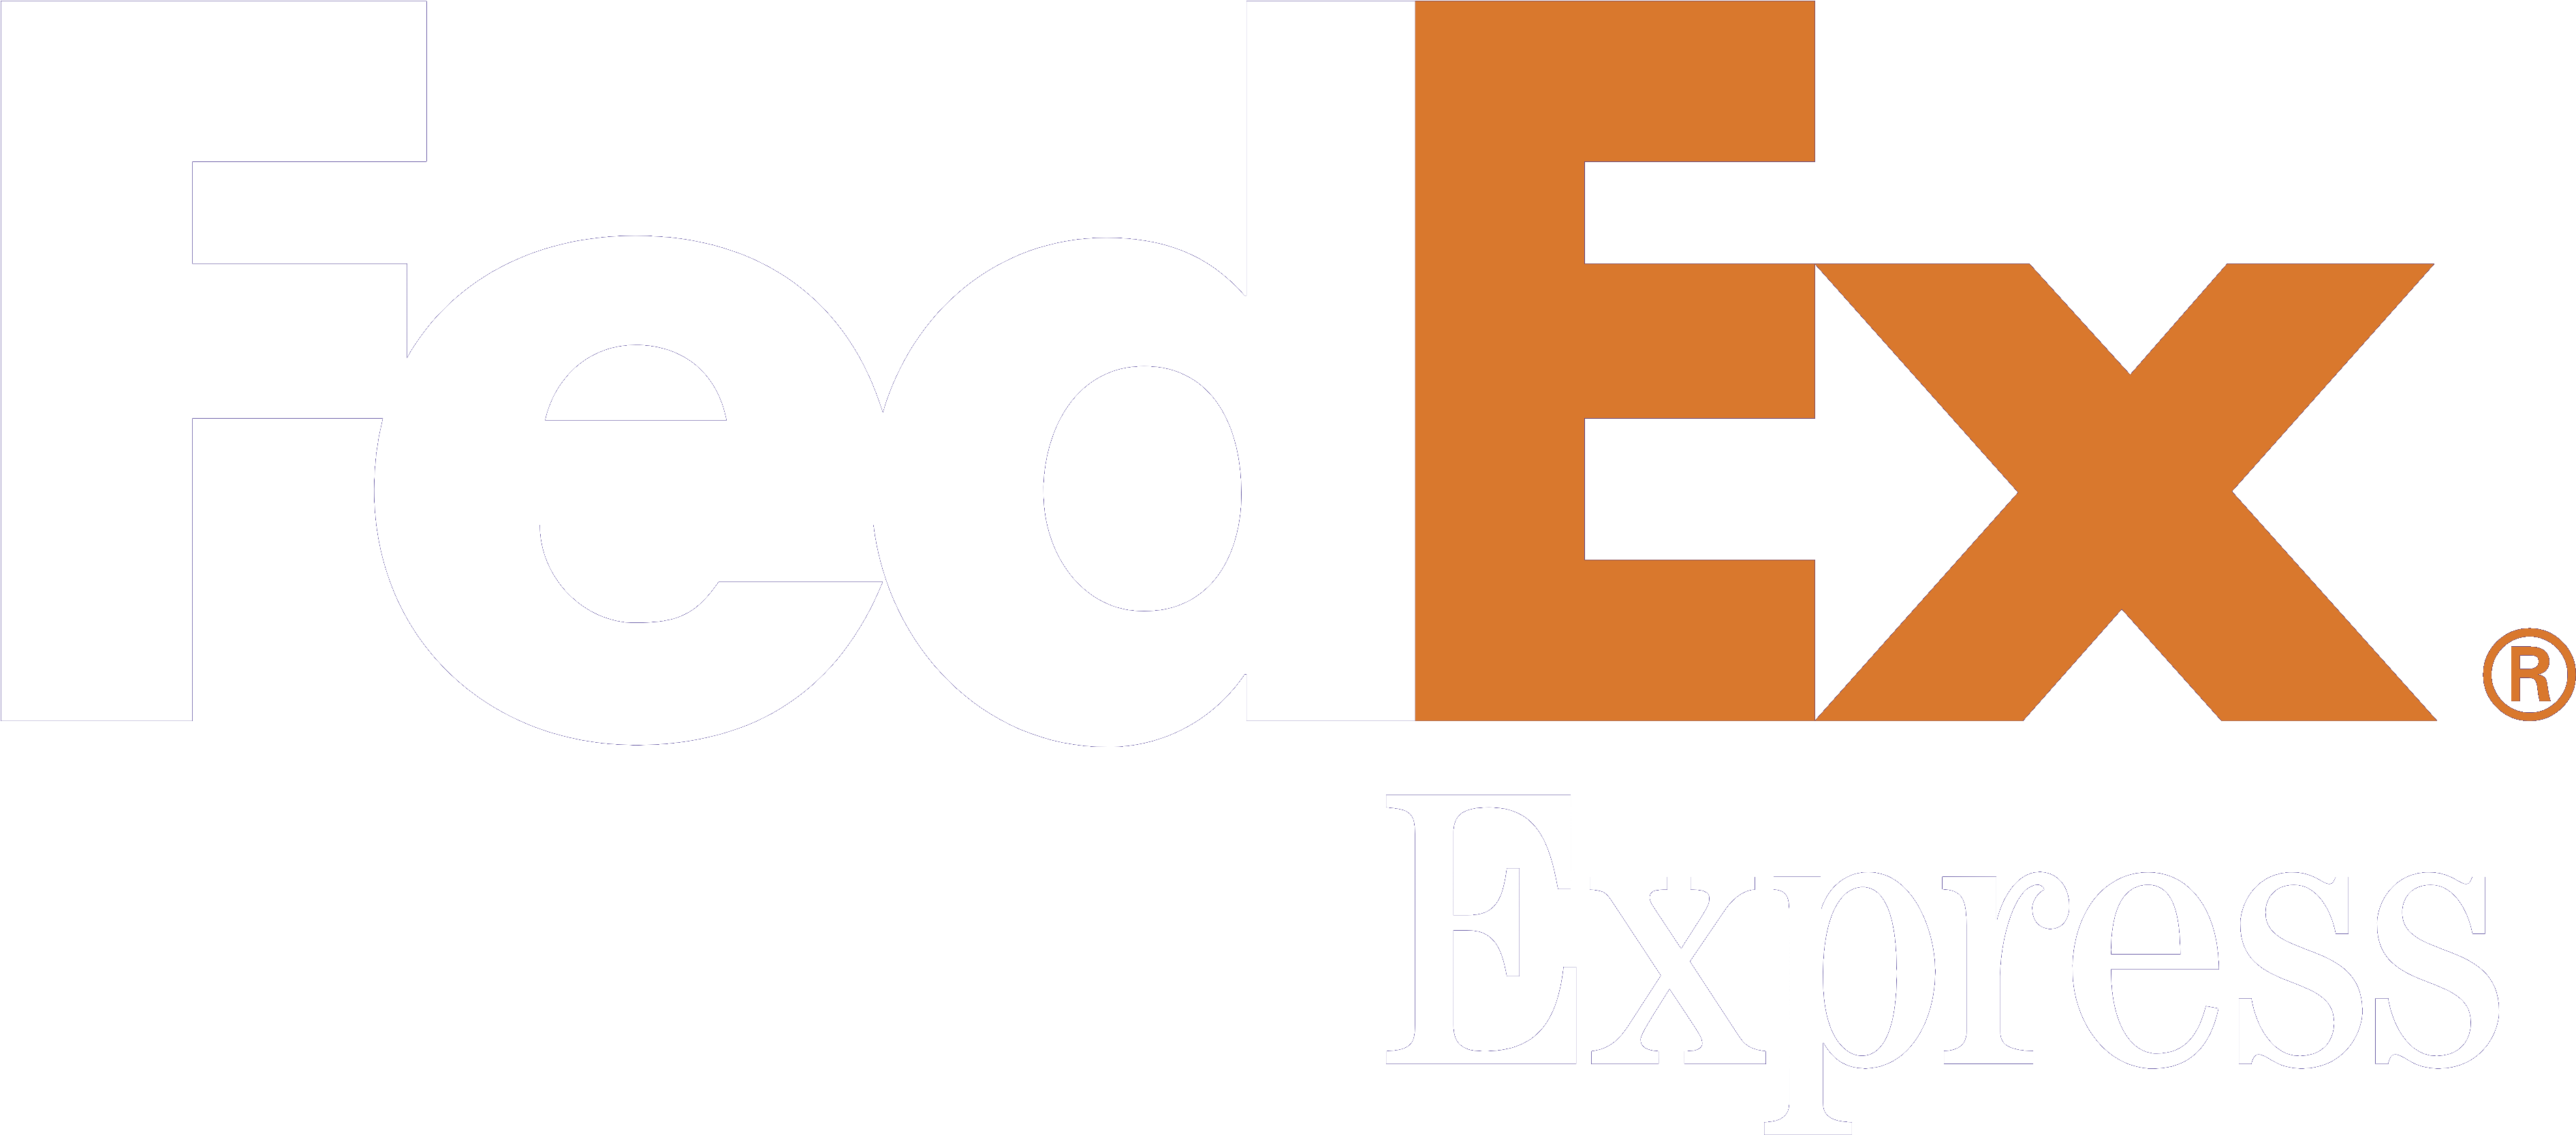 Fedex Png Logo.